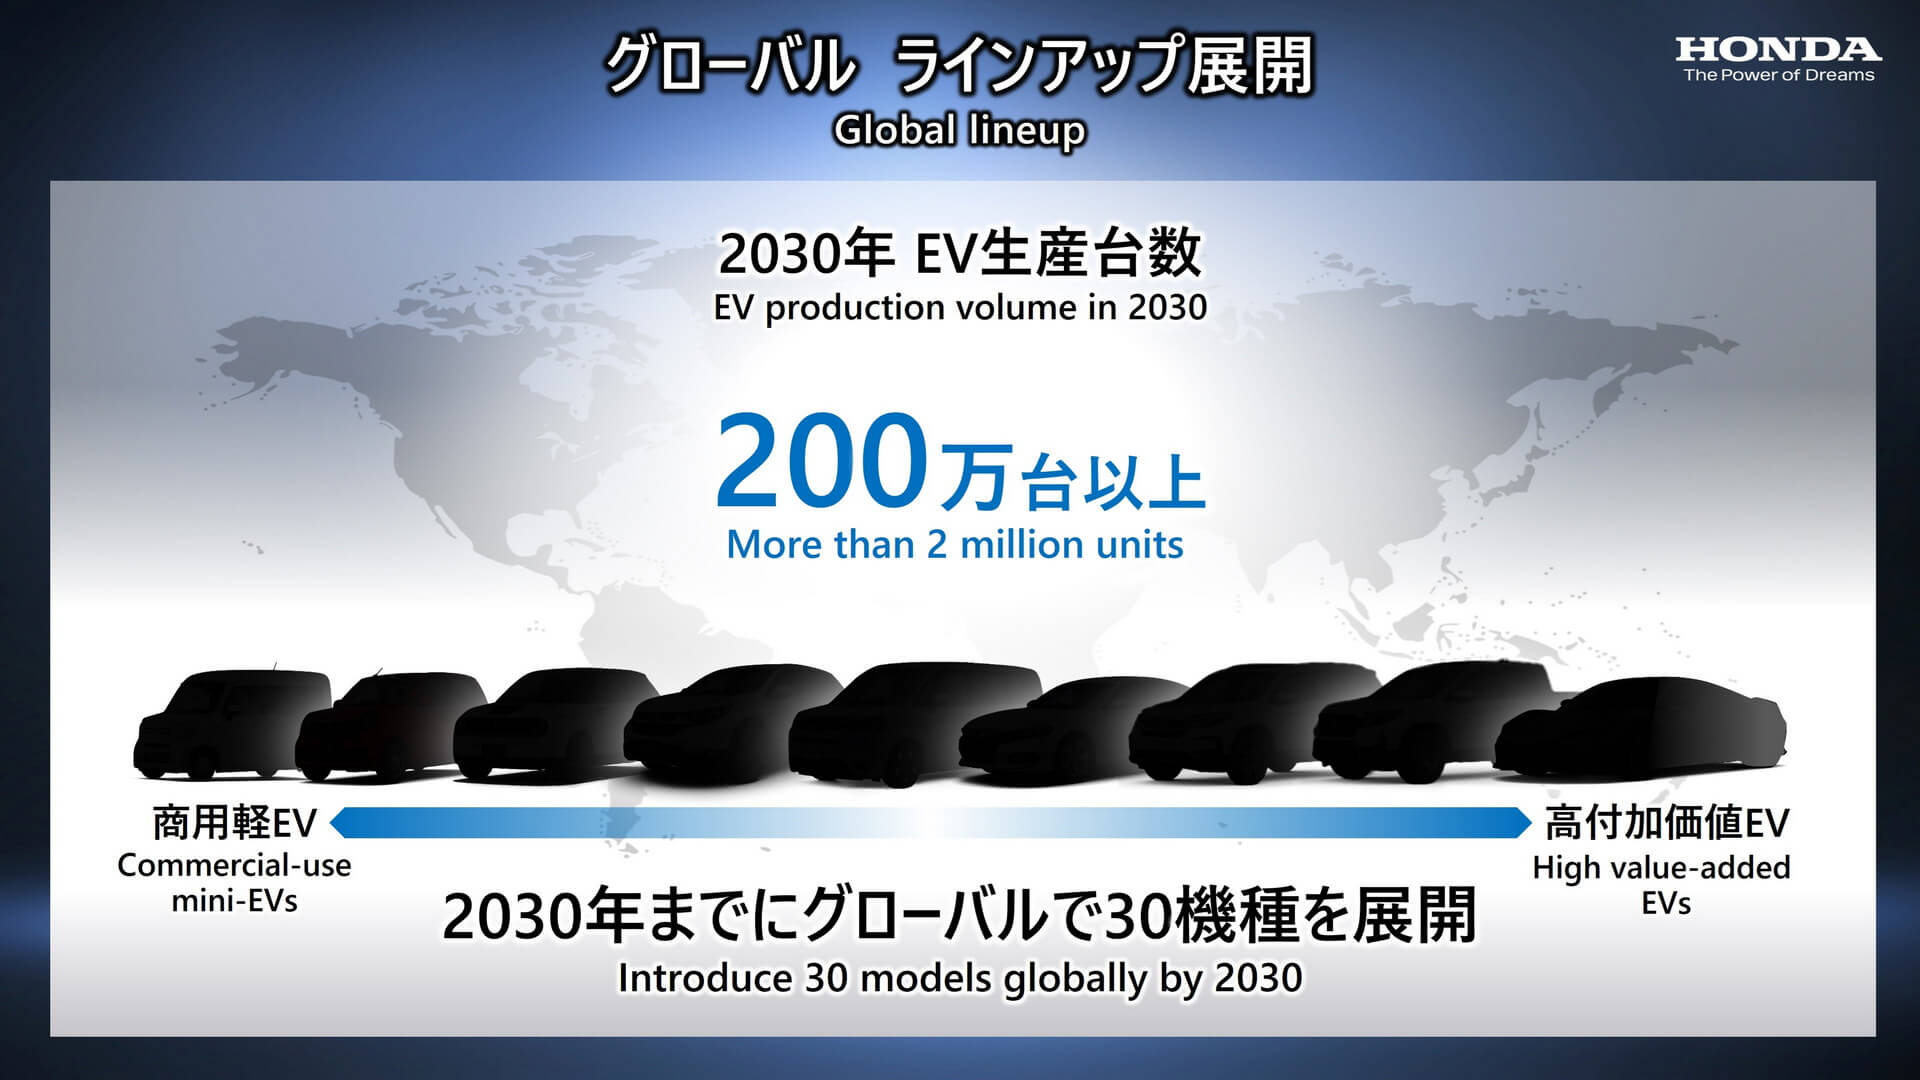 Planos de eletrificação da Honda (3)